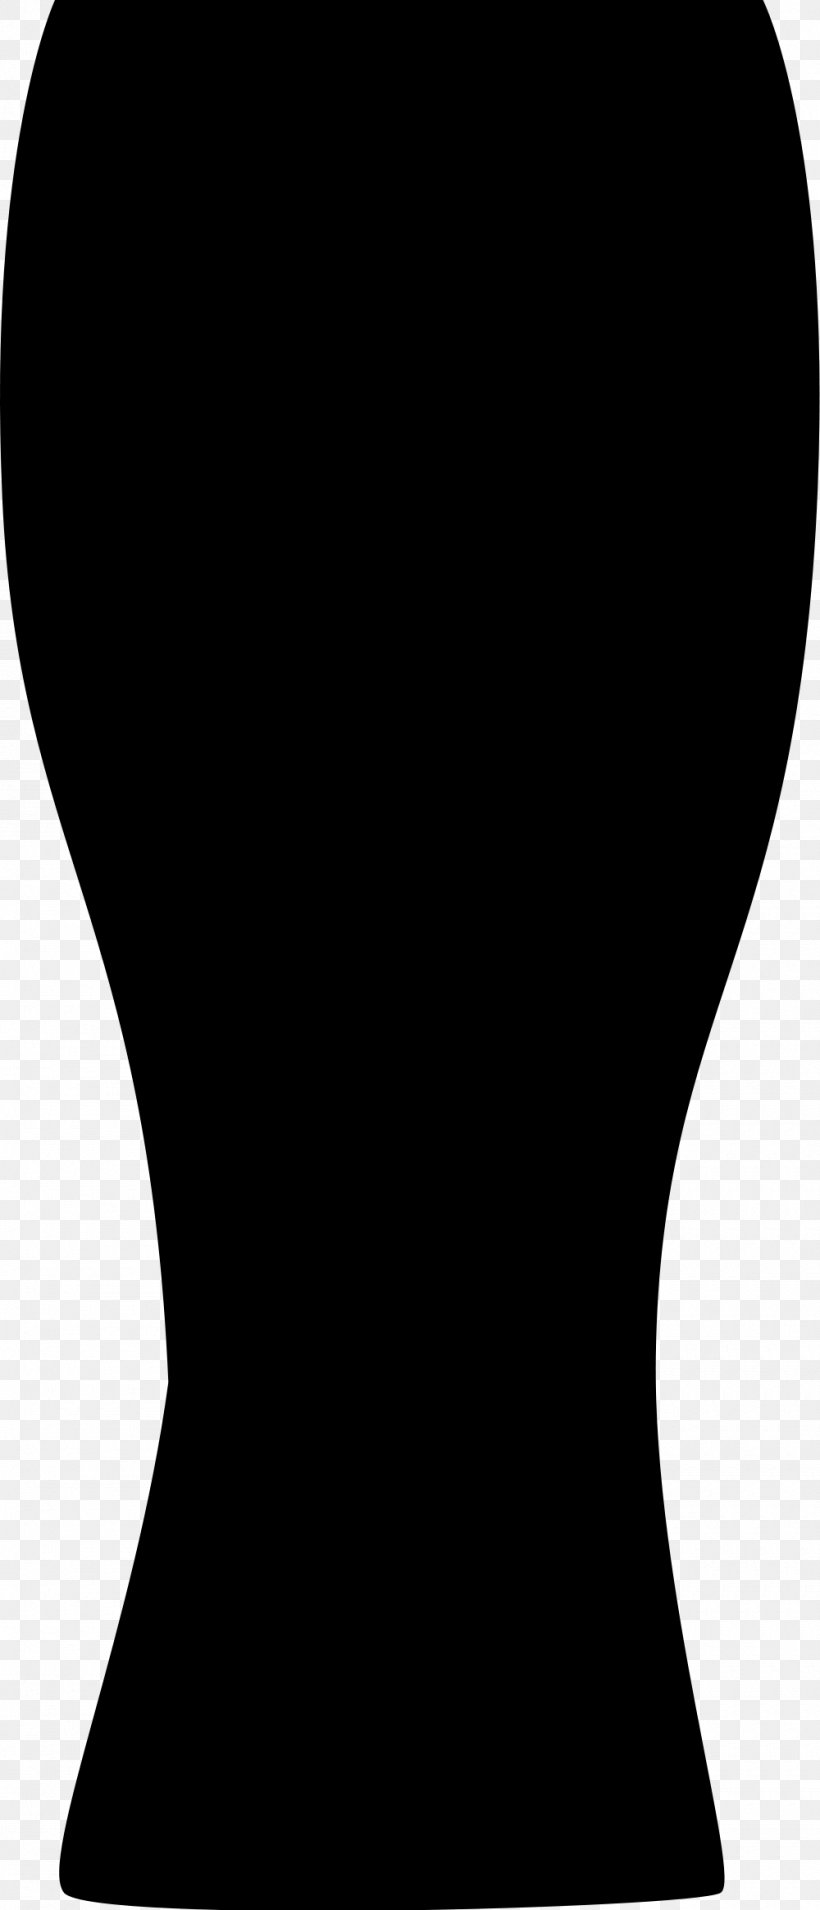 Wheat Beer Beer Glasses Pilsner Schooner, PNG, 1000x2330px, Beer, Beer Bottle, Beer Glasses, Beer Stein, Black Download Free